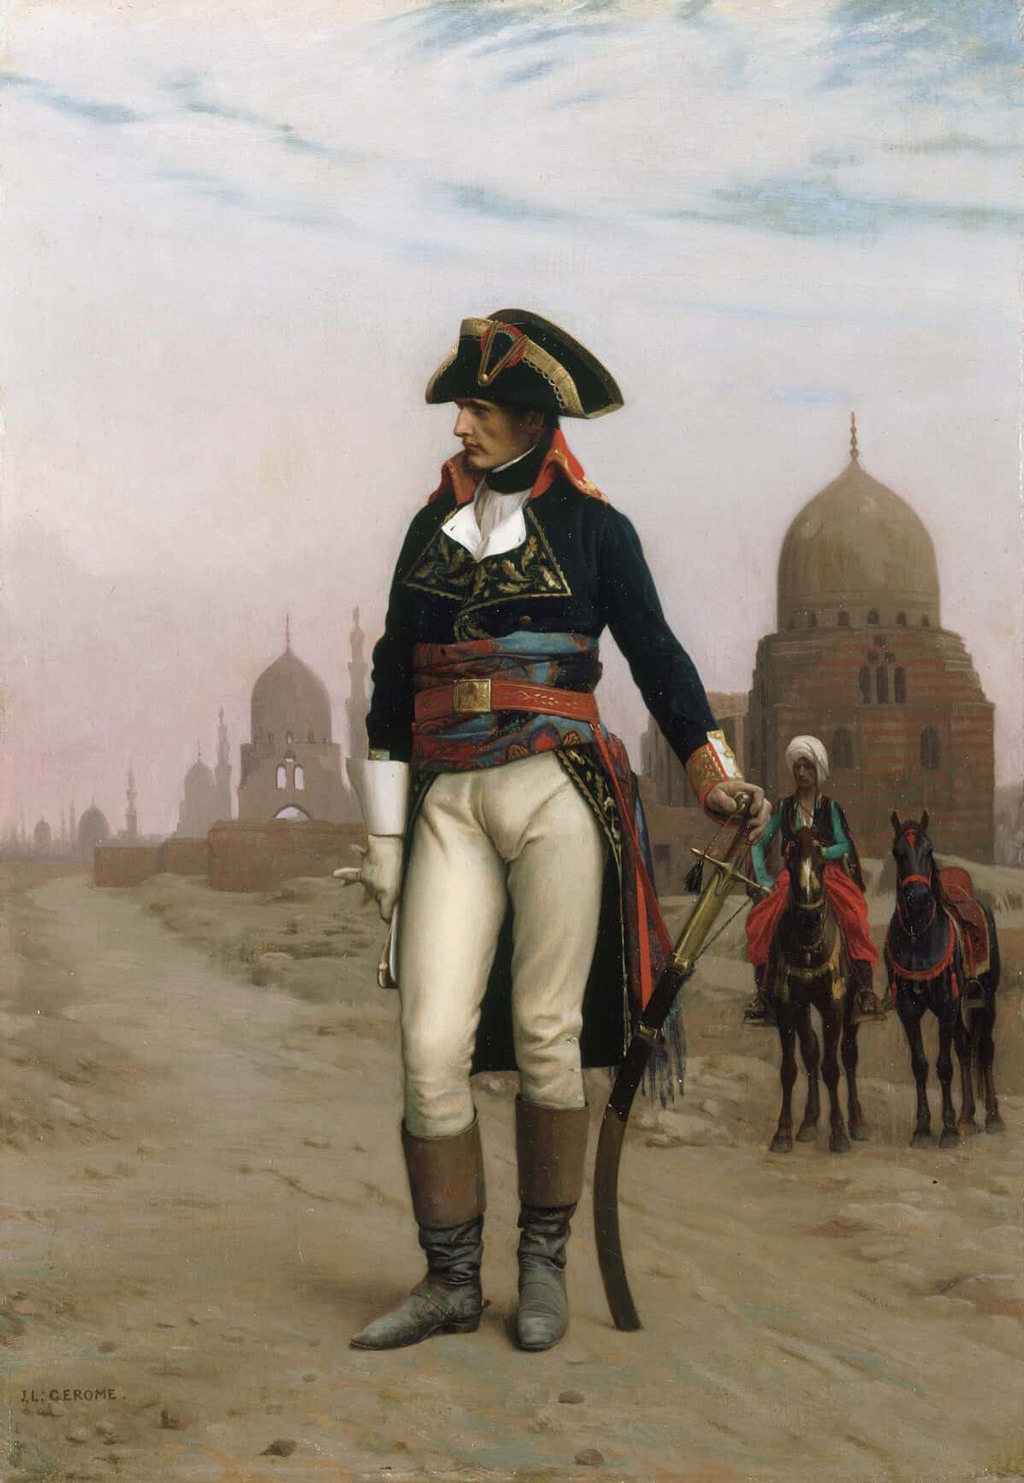 (نابليون) في القاهرة، لوحة بريشة (جون ليون جيروم).